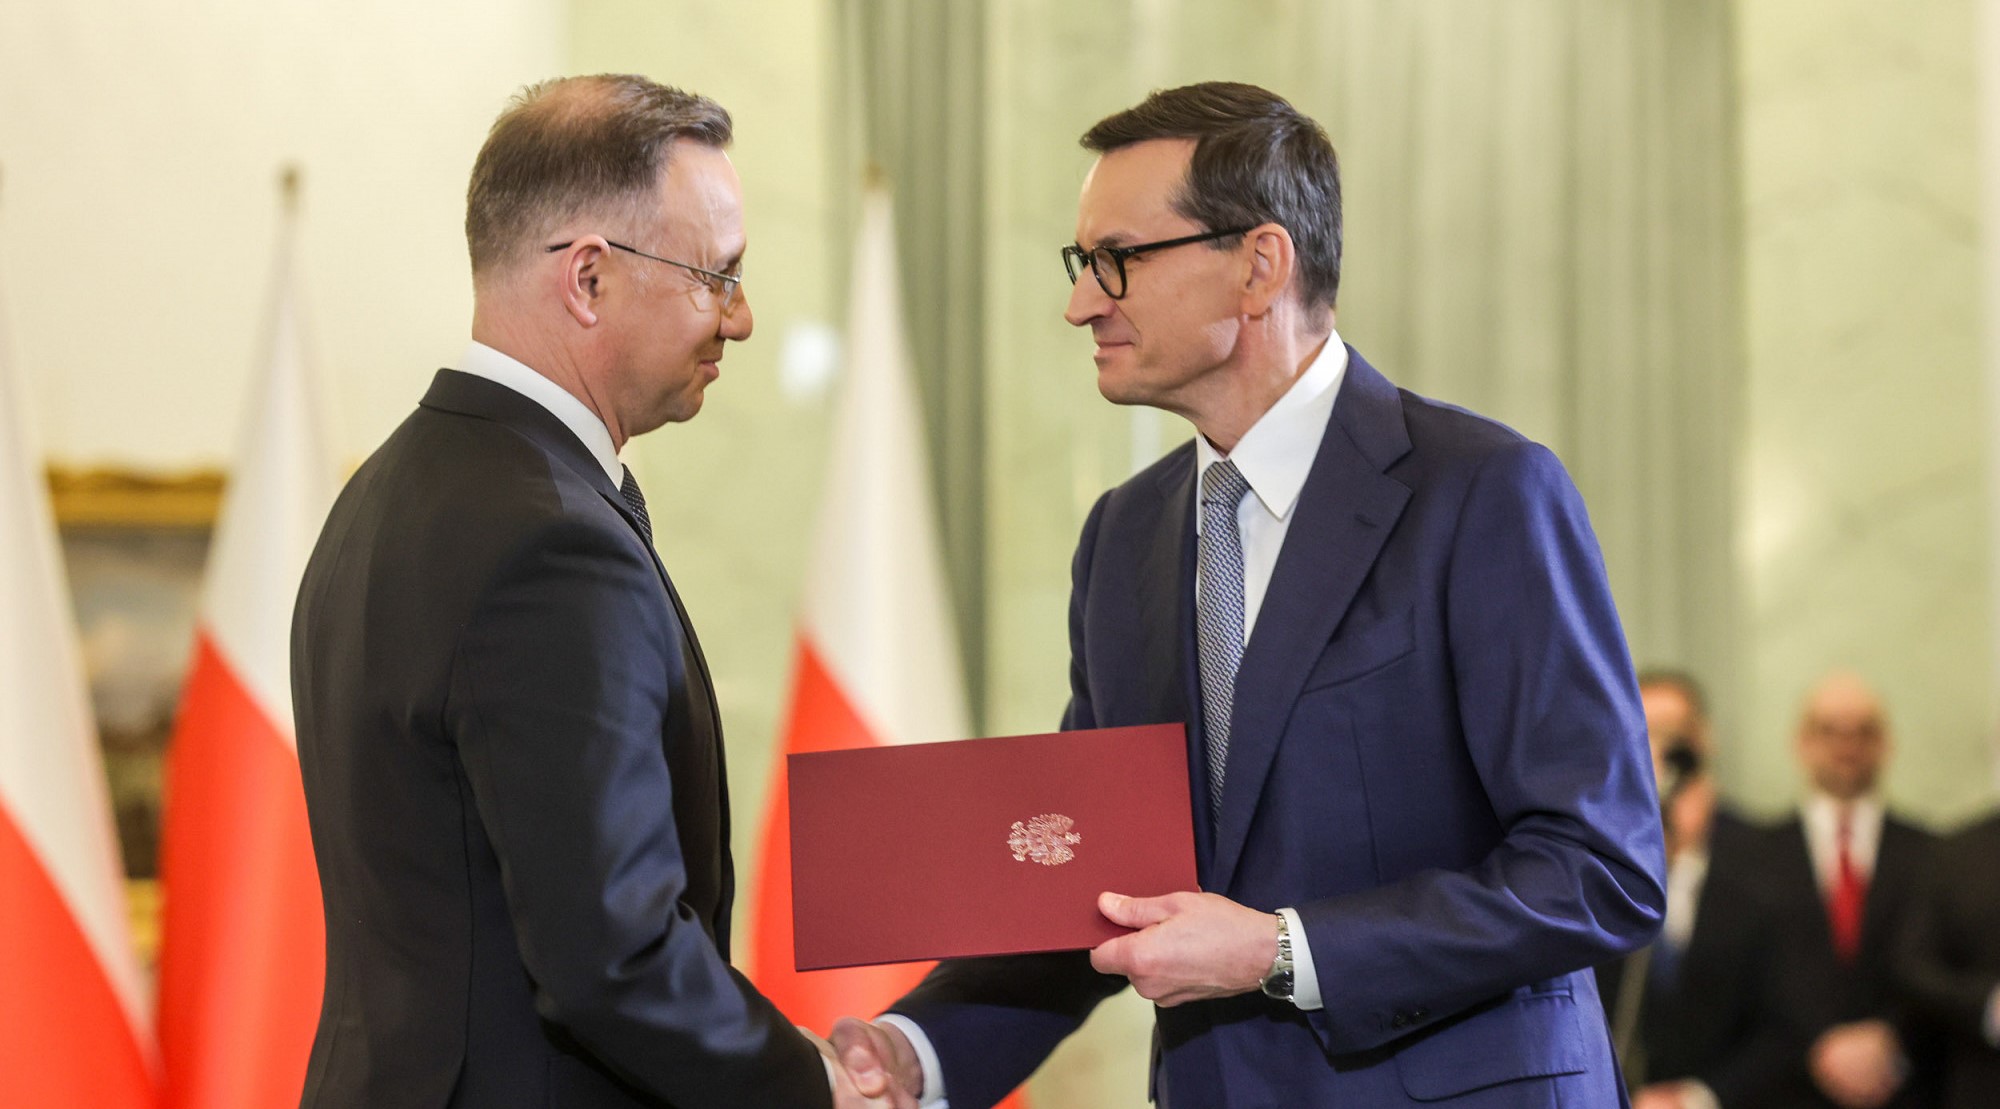 Polski prezydent zaprzysięga nowy – prawdopodobnie tymczasowy – rząd